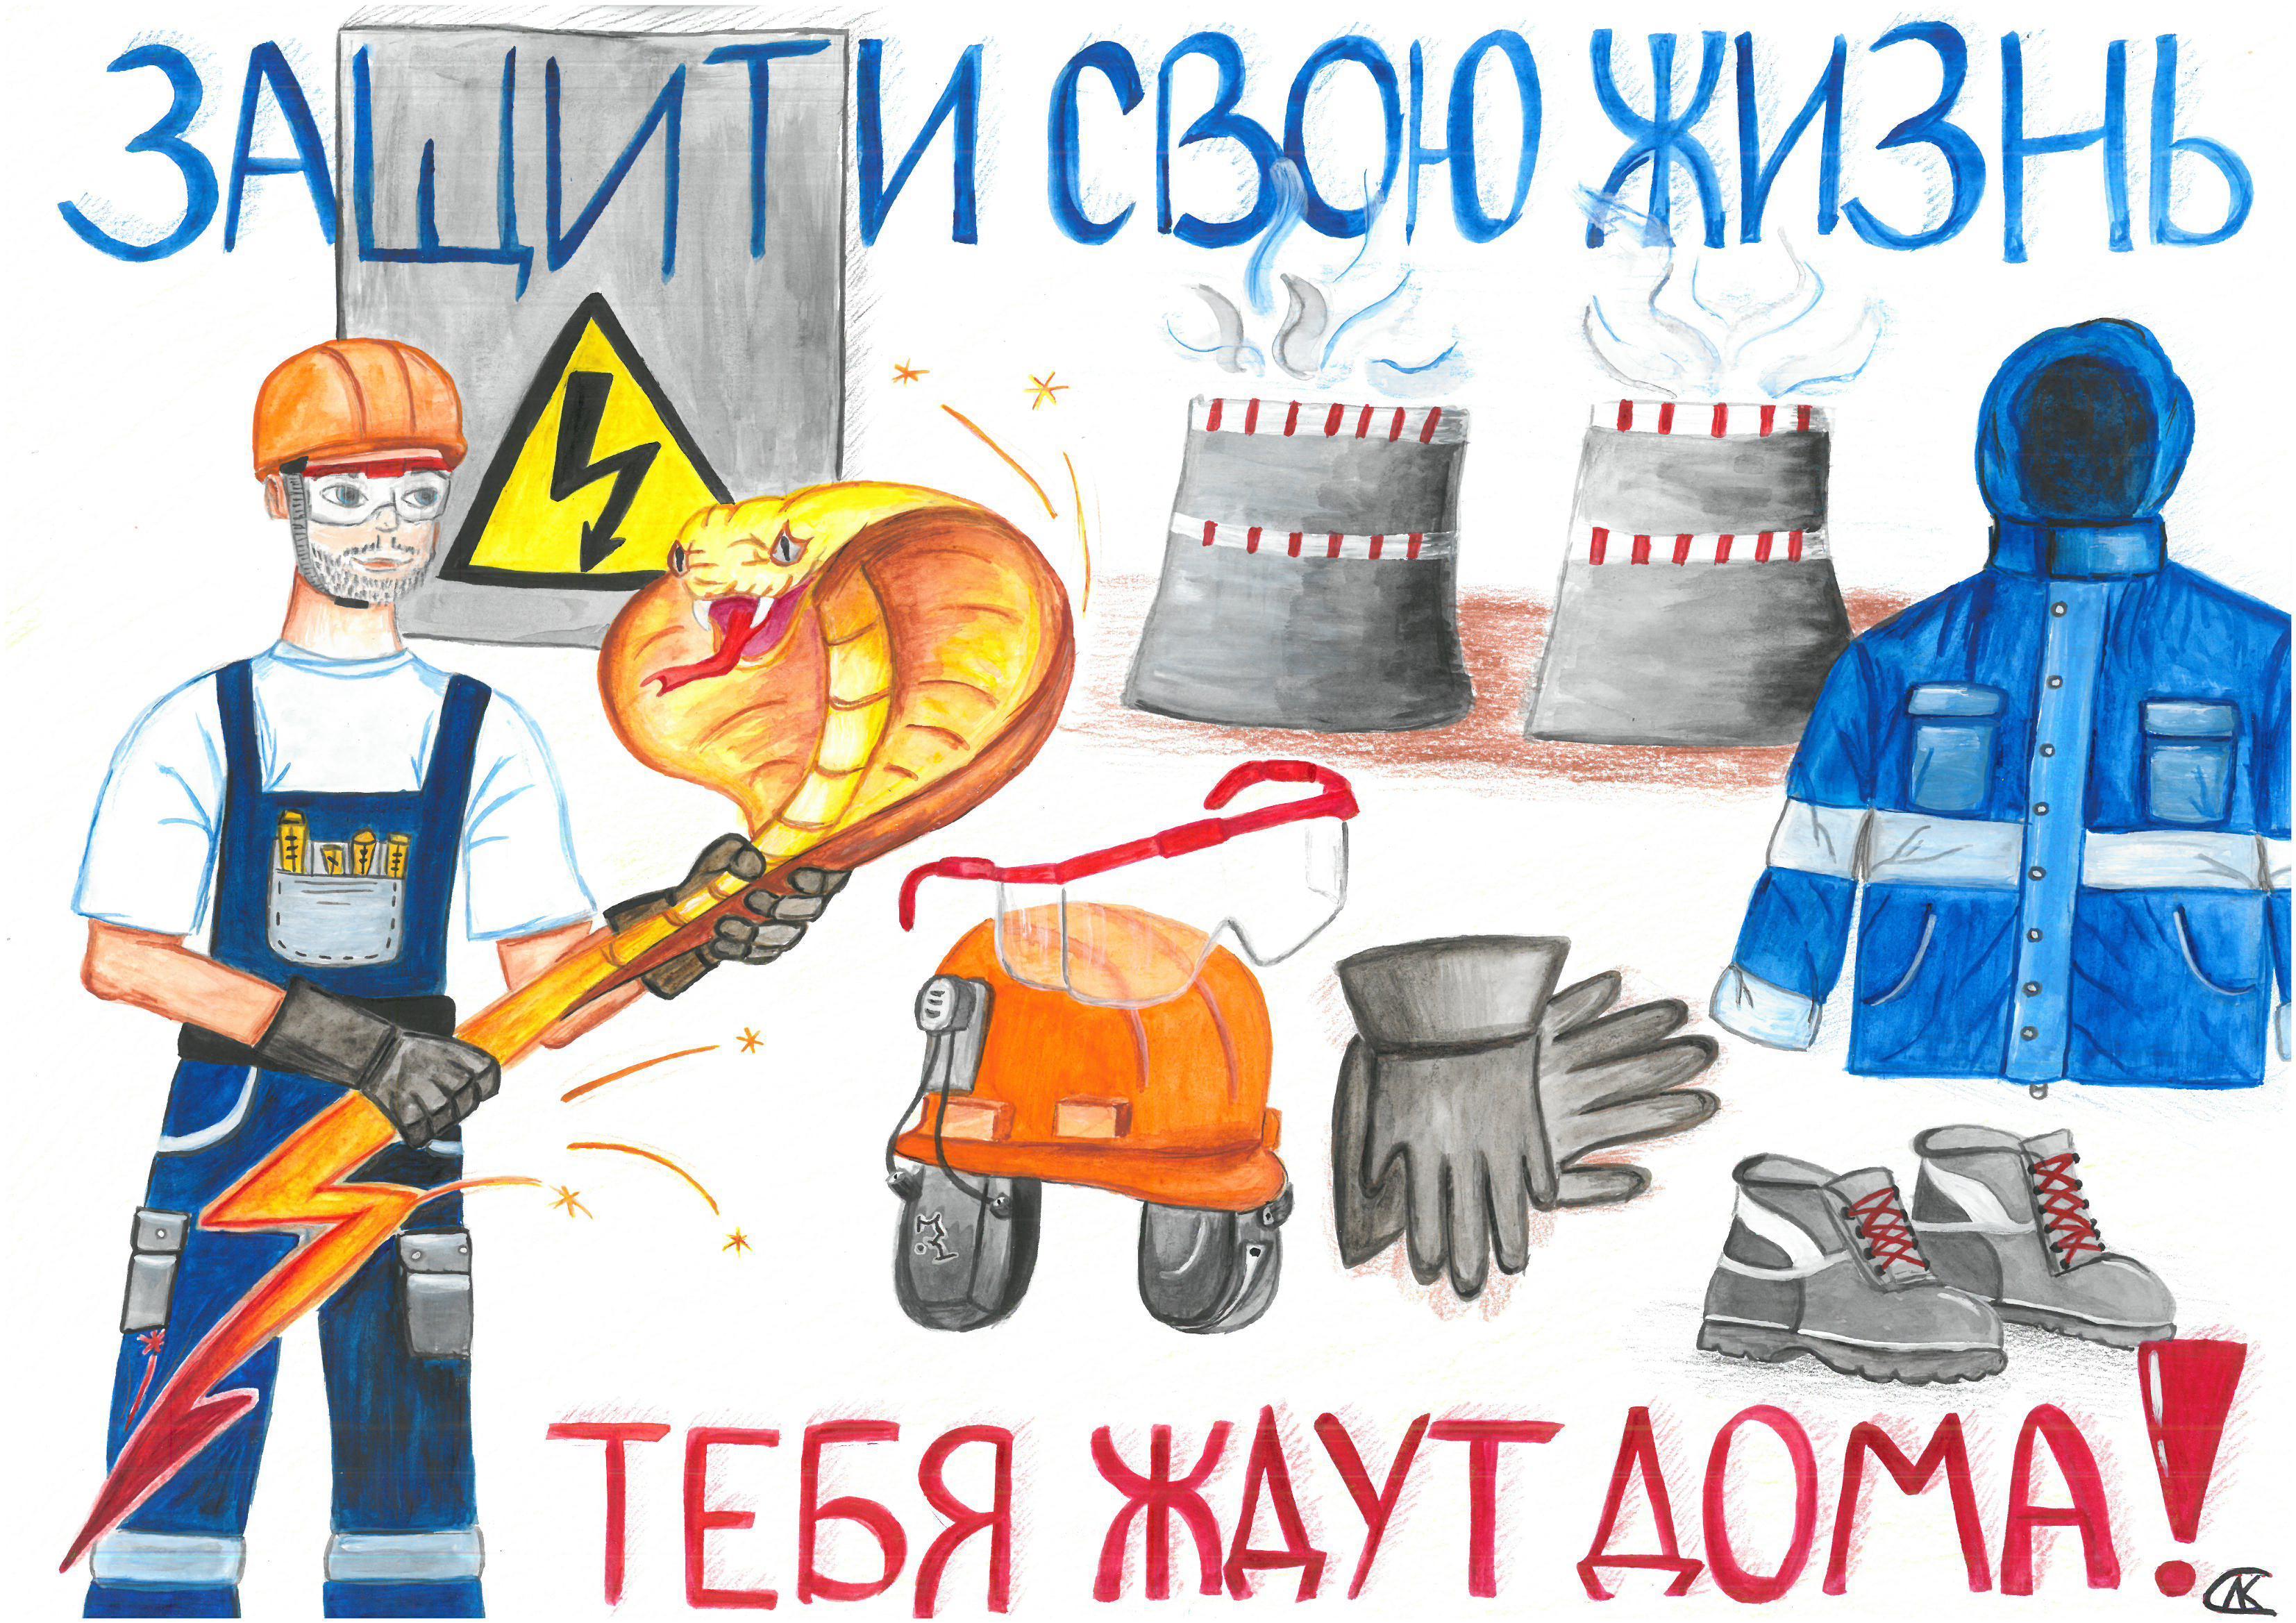 28 апреля – Всемирный день охраны труда